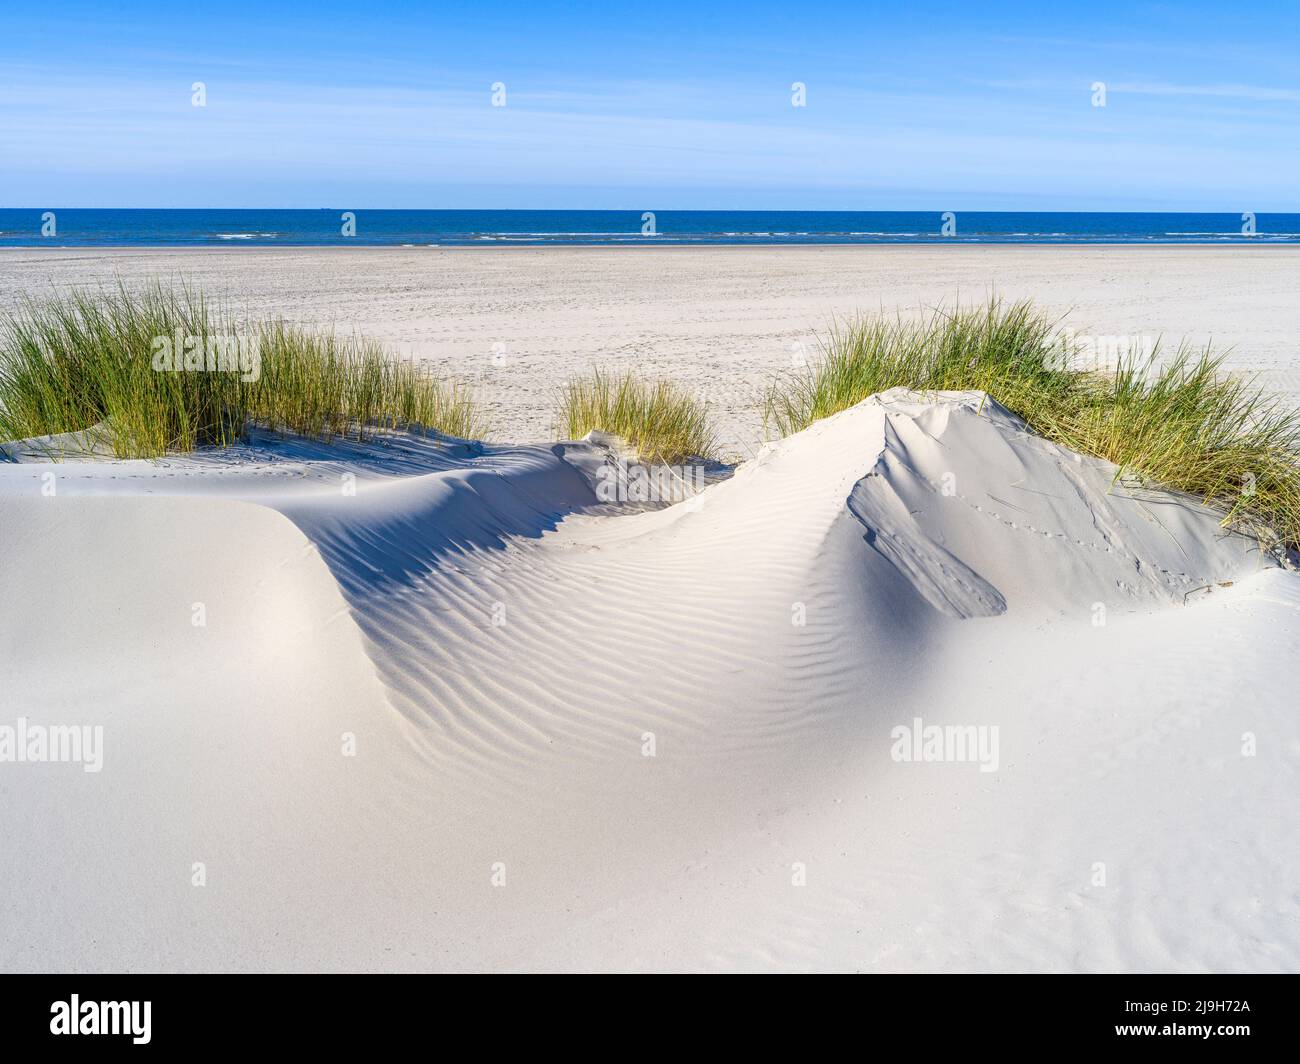 Strand, Dünenlandschaft auf der Insel Juist, Nordsee, Niedersachsen, Deutschland Stock Photo